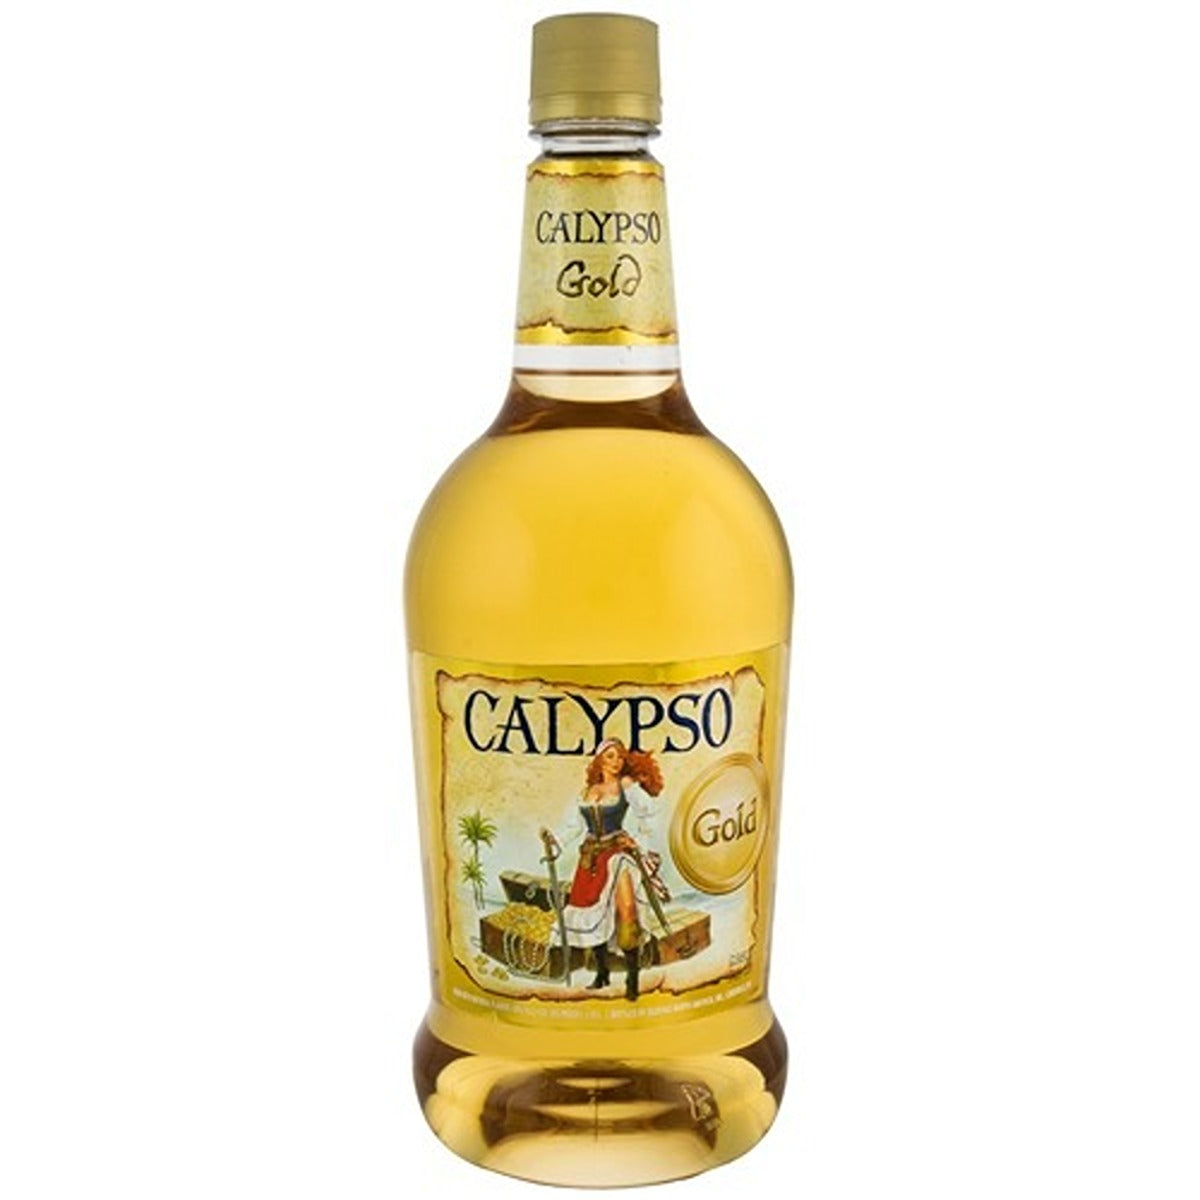 CALYPSO GOLD RUM 750ML